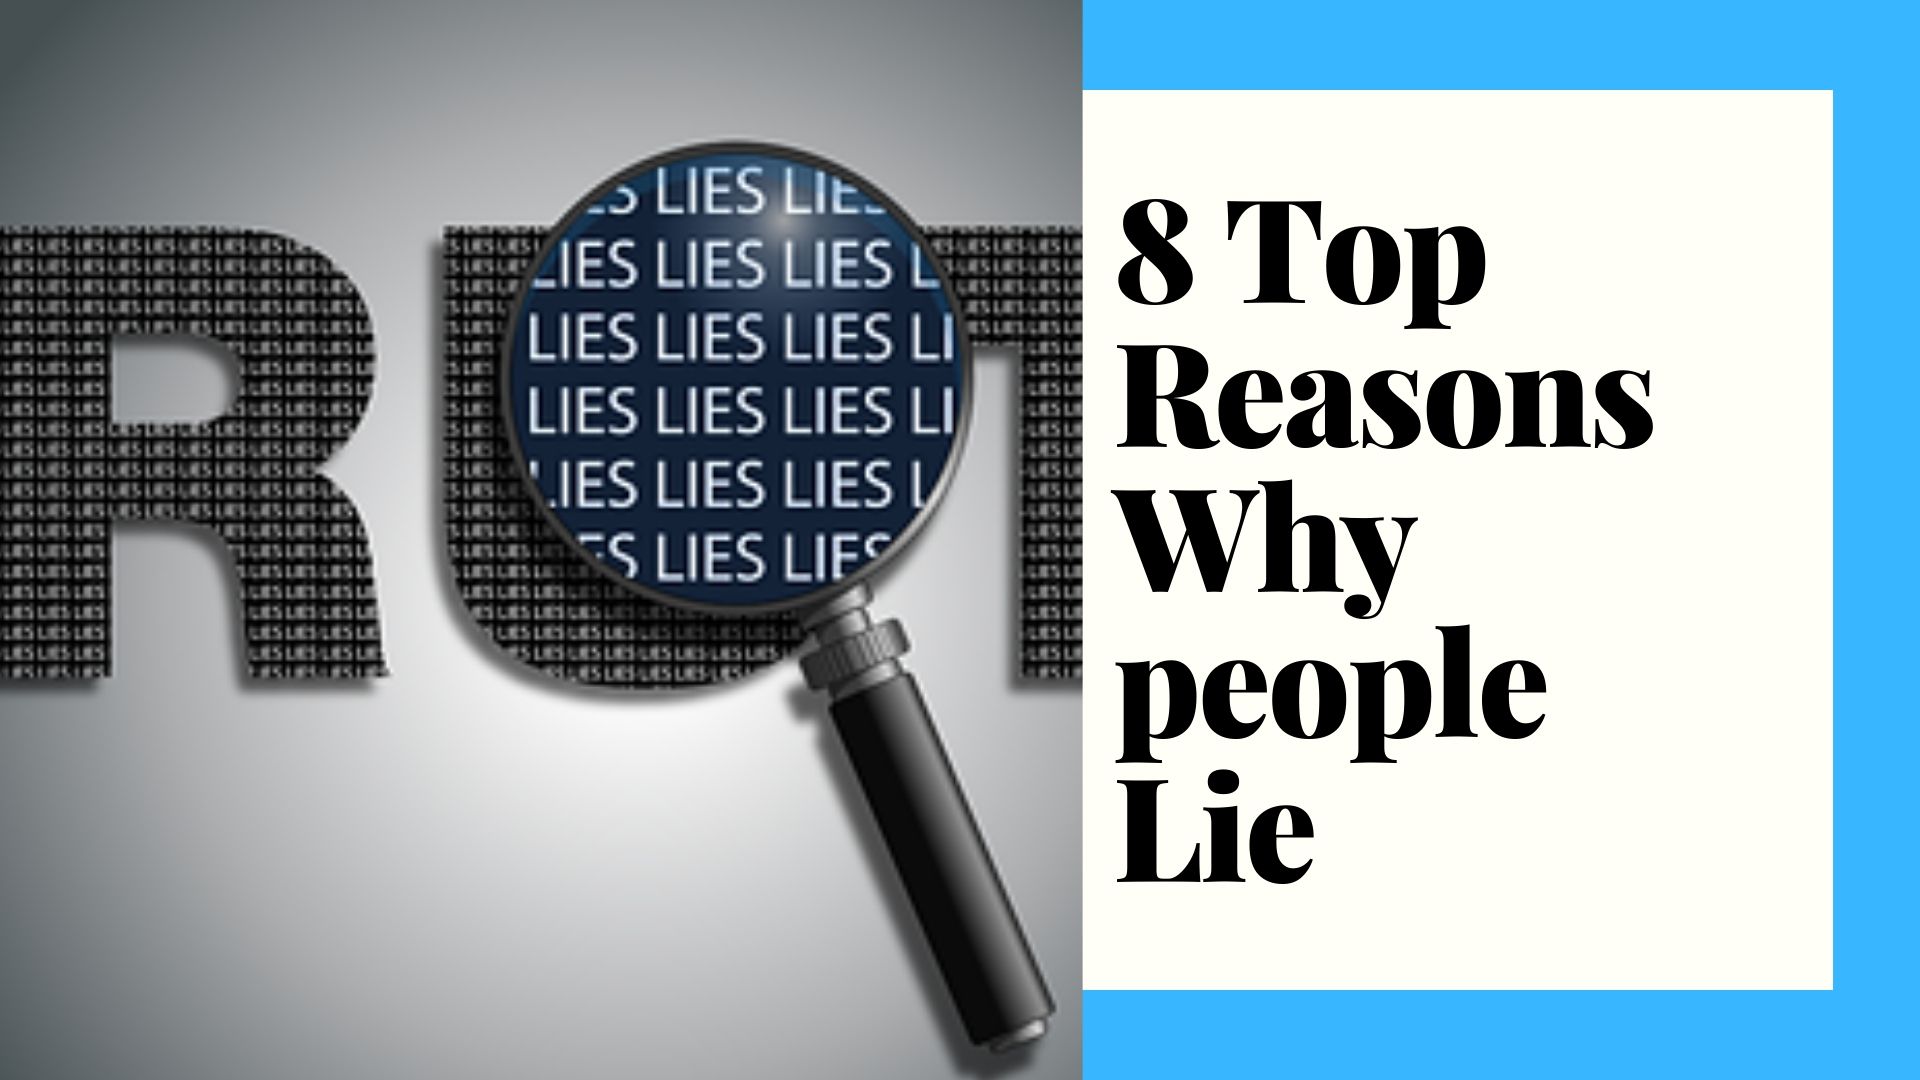 8 top reasons why people lie